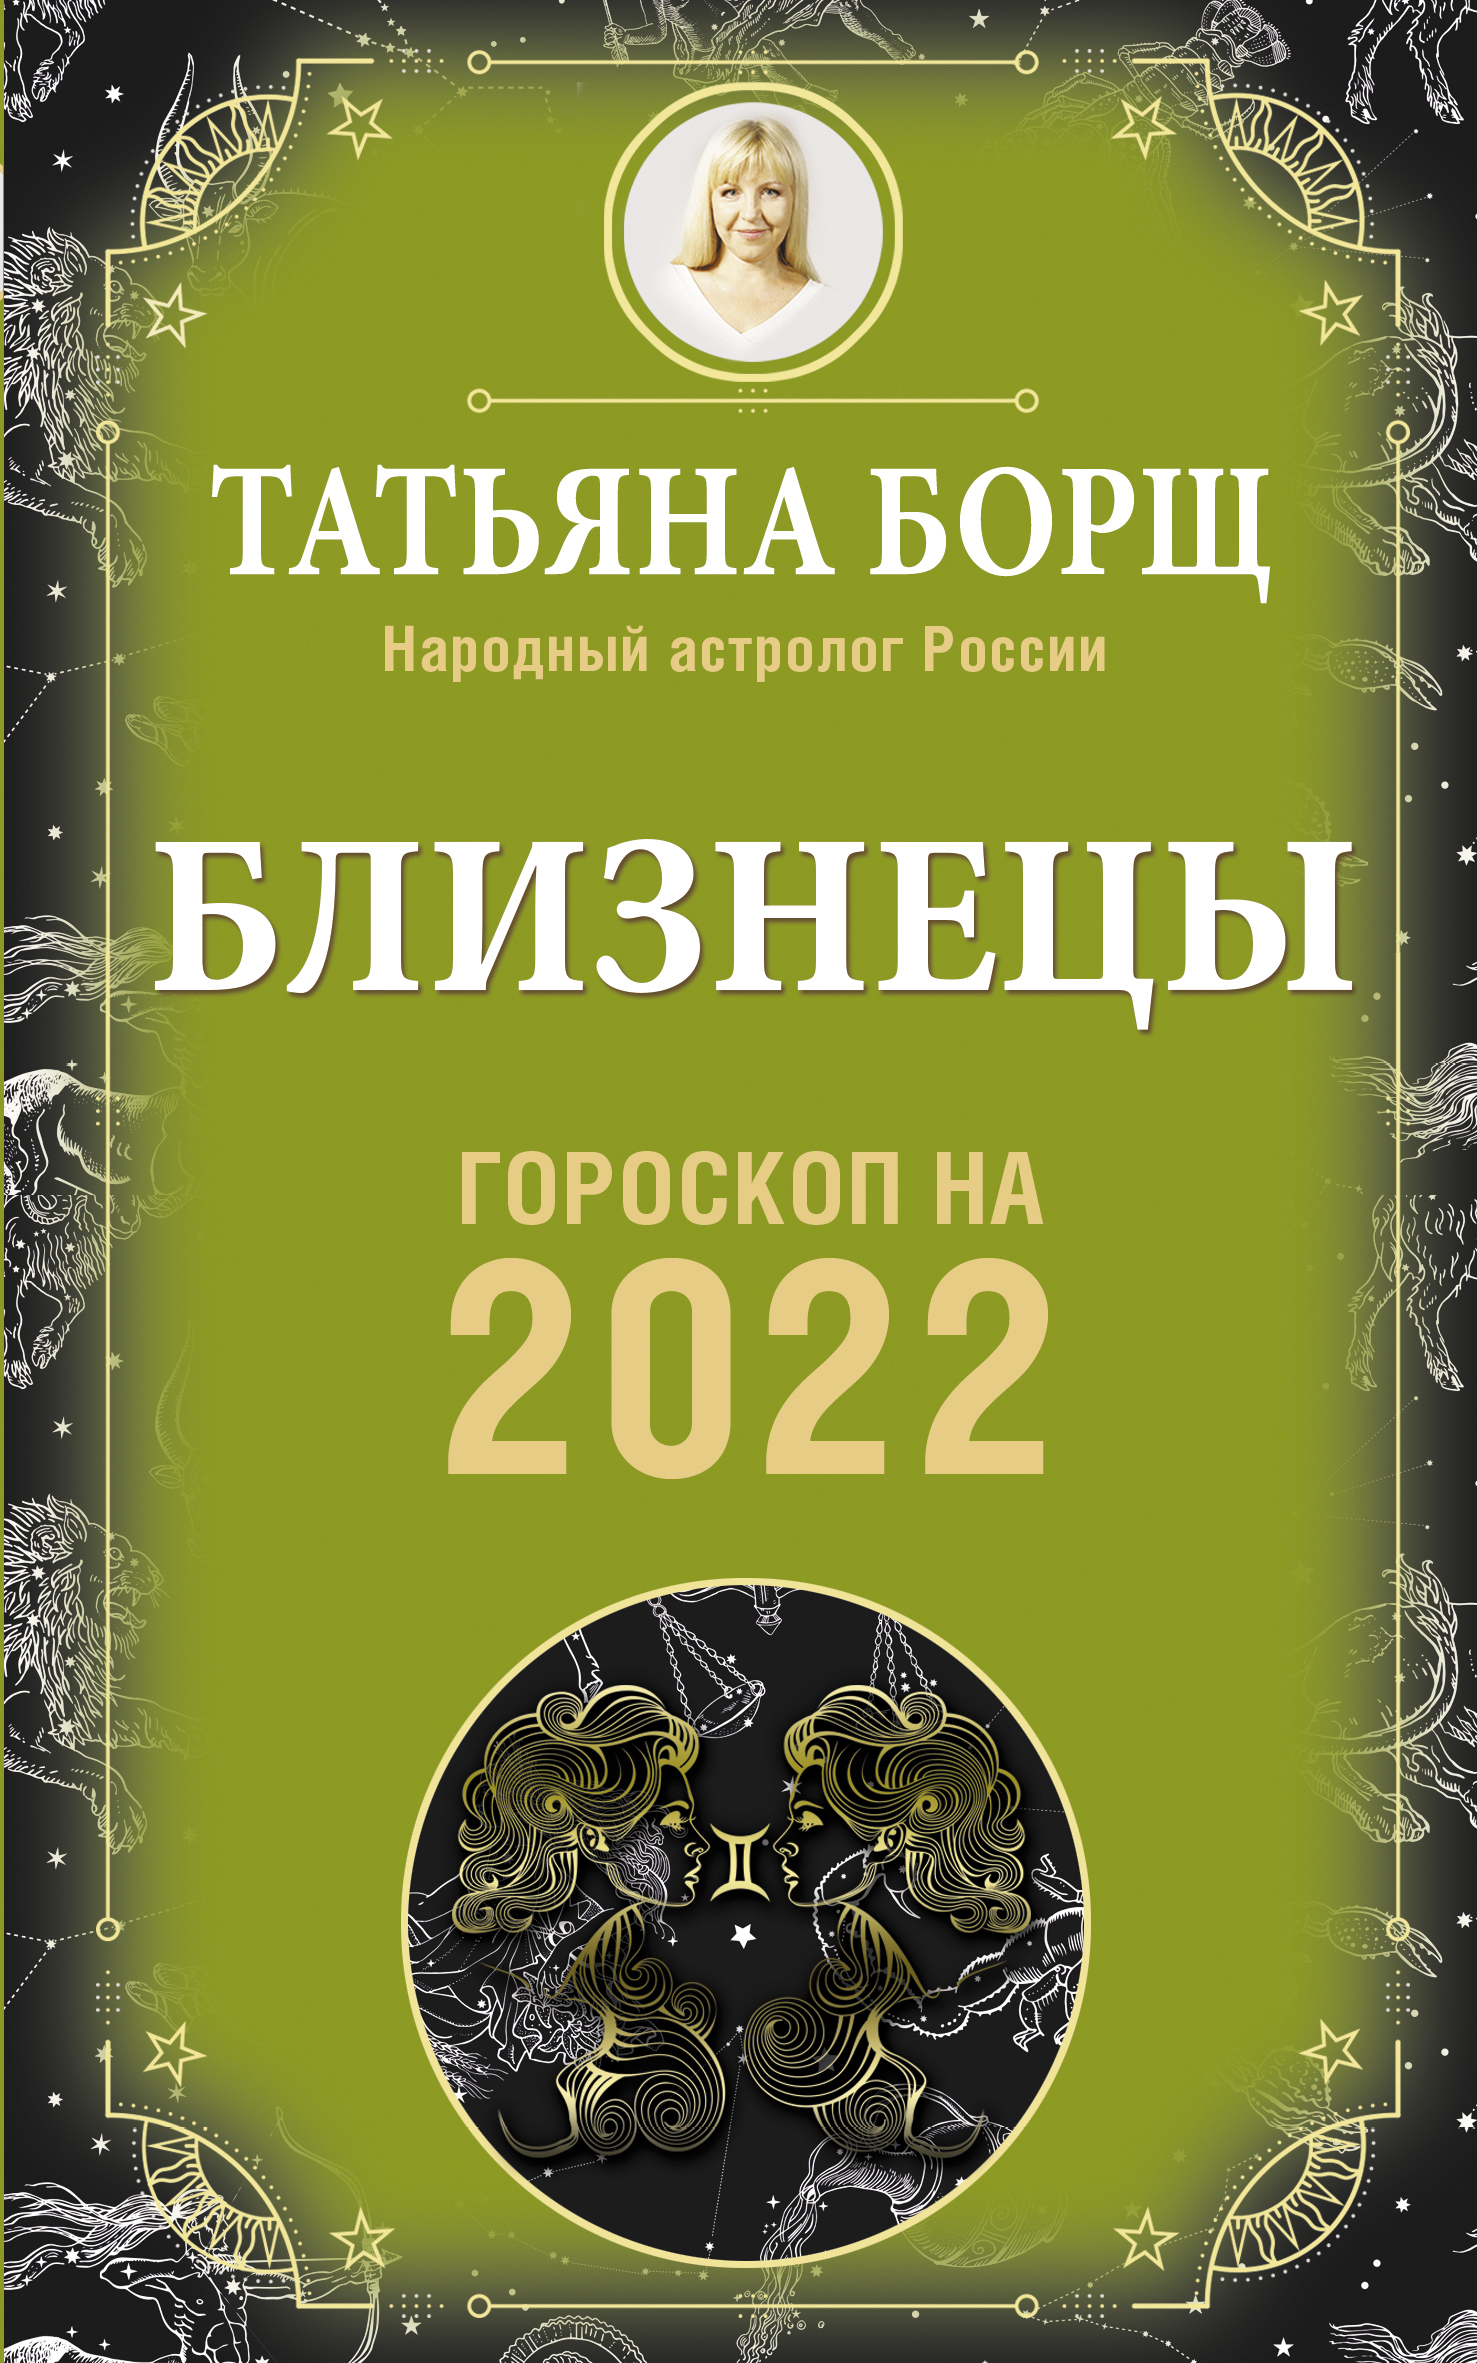   .   2022  